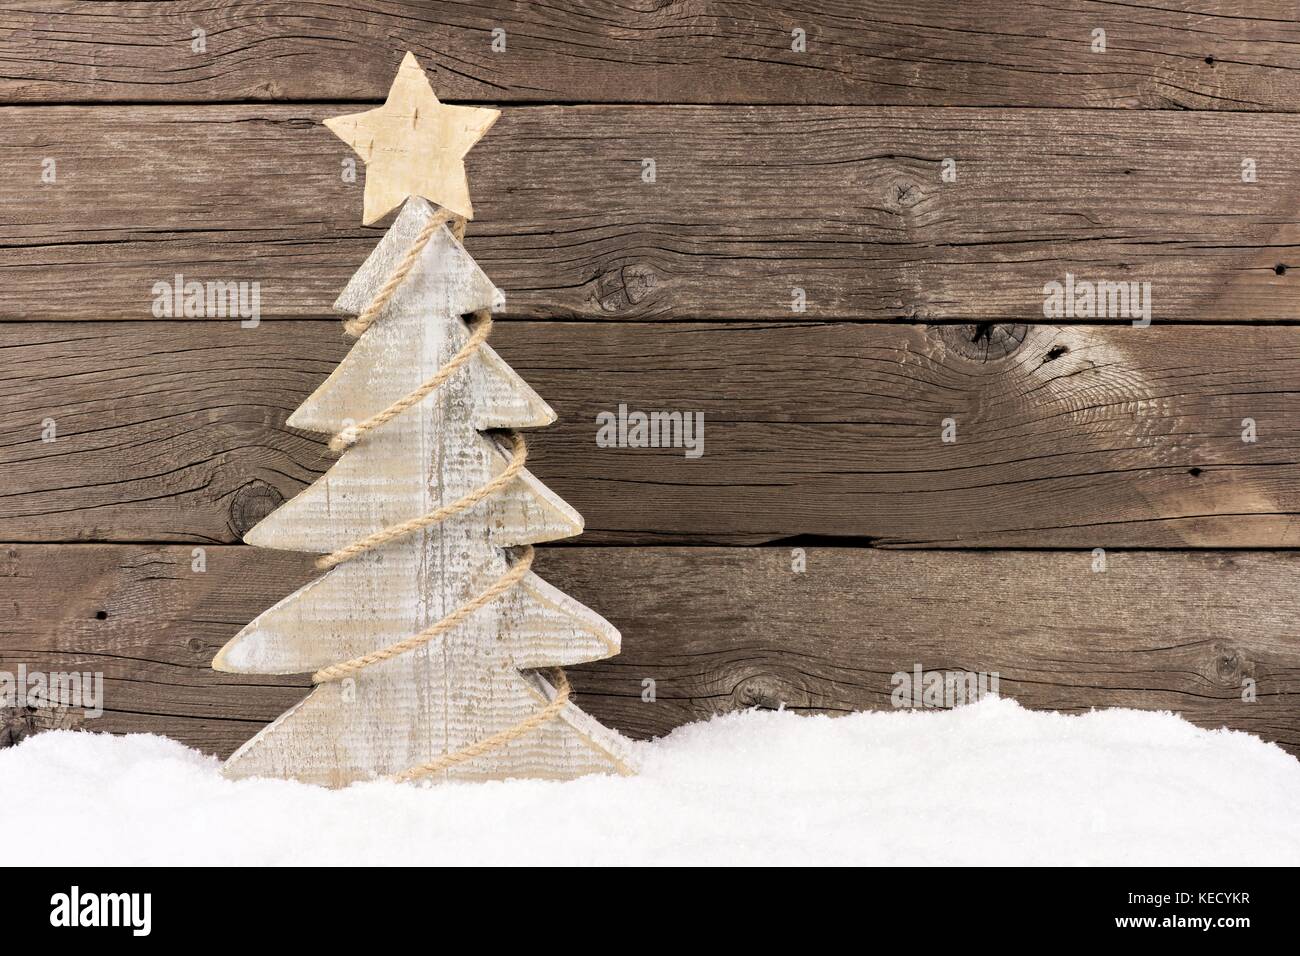 Albero Di Natale In Legno Shabby.Shabby Chic In Legno Albero Di Natale Con Spago Garland In Piedi Nella Neve Contro Un Rustico Sfondo Legno Foto Stock Alamy